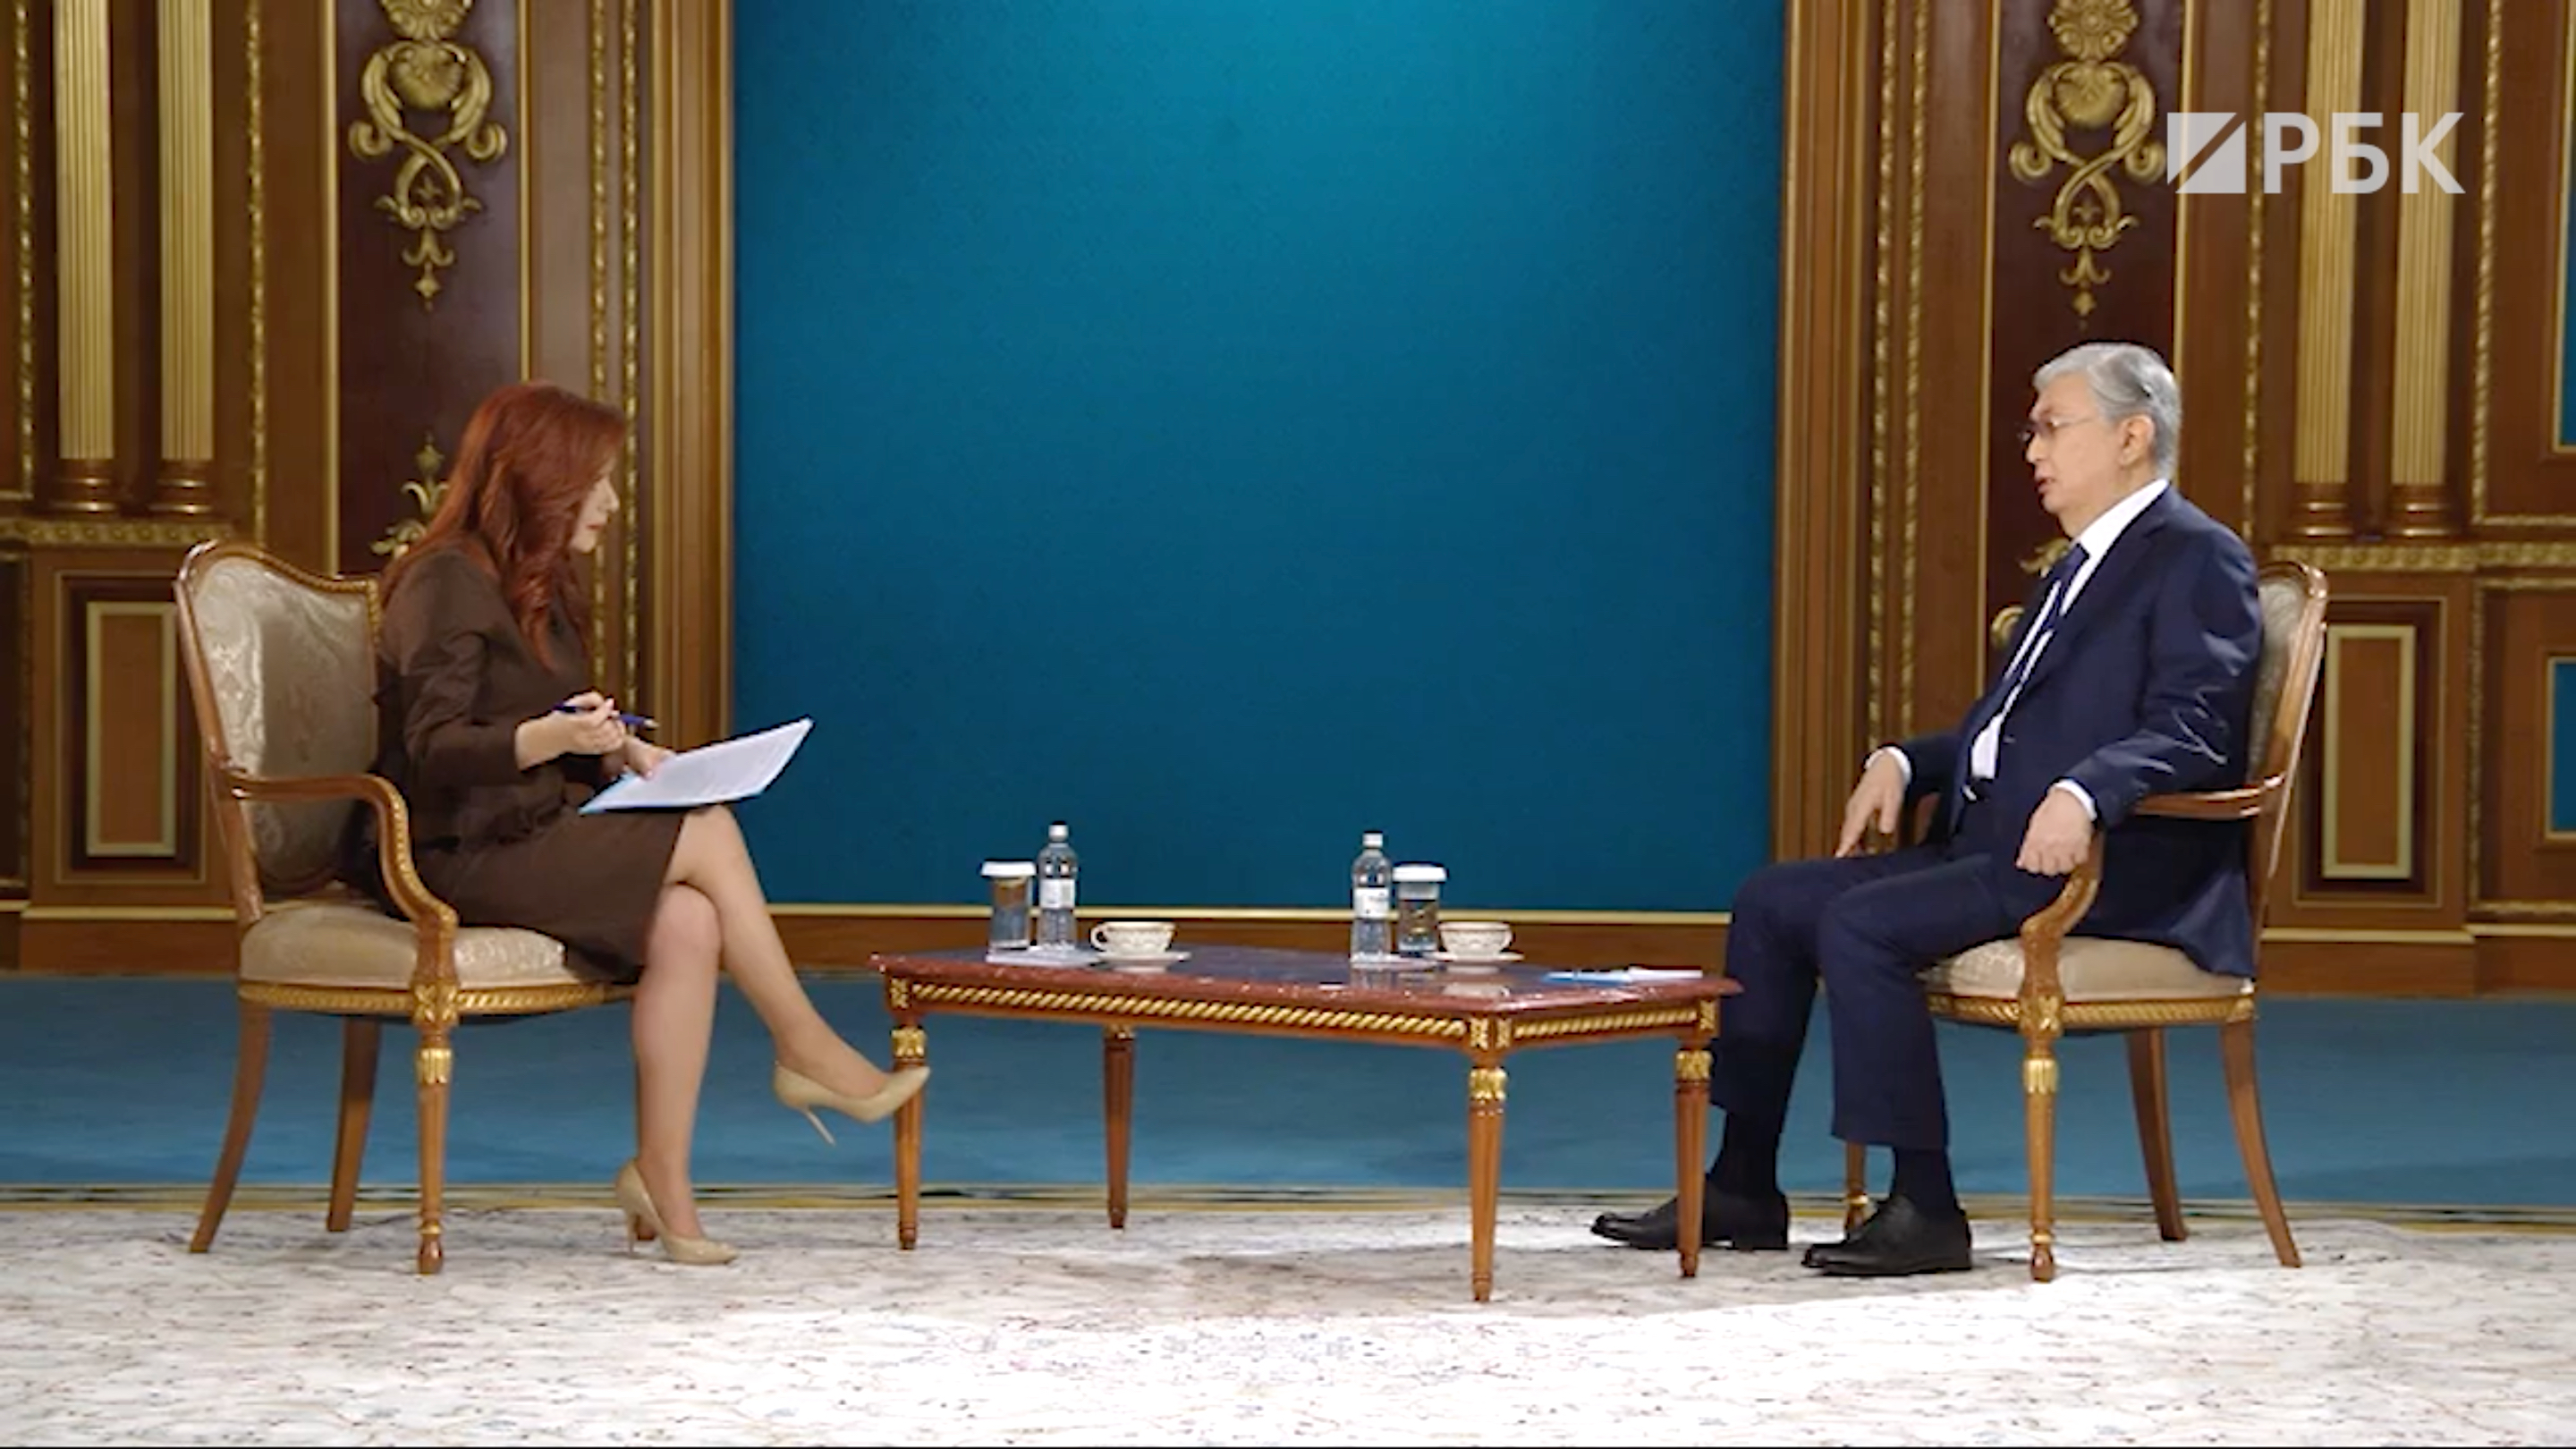 Токаев заявил, что торга с Назарбаевым о властных полномочиях не было"/>













